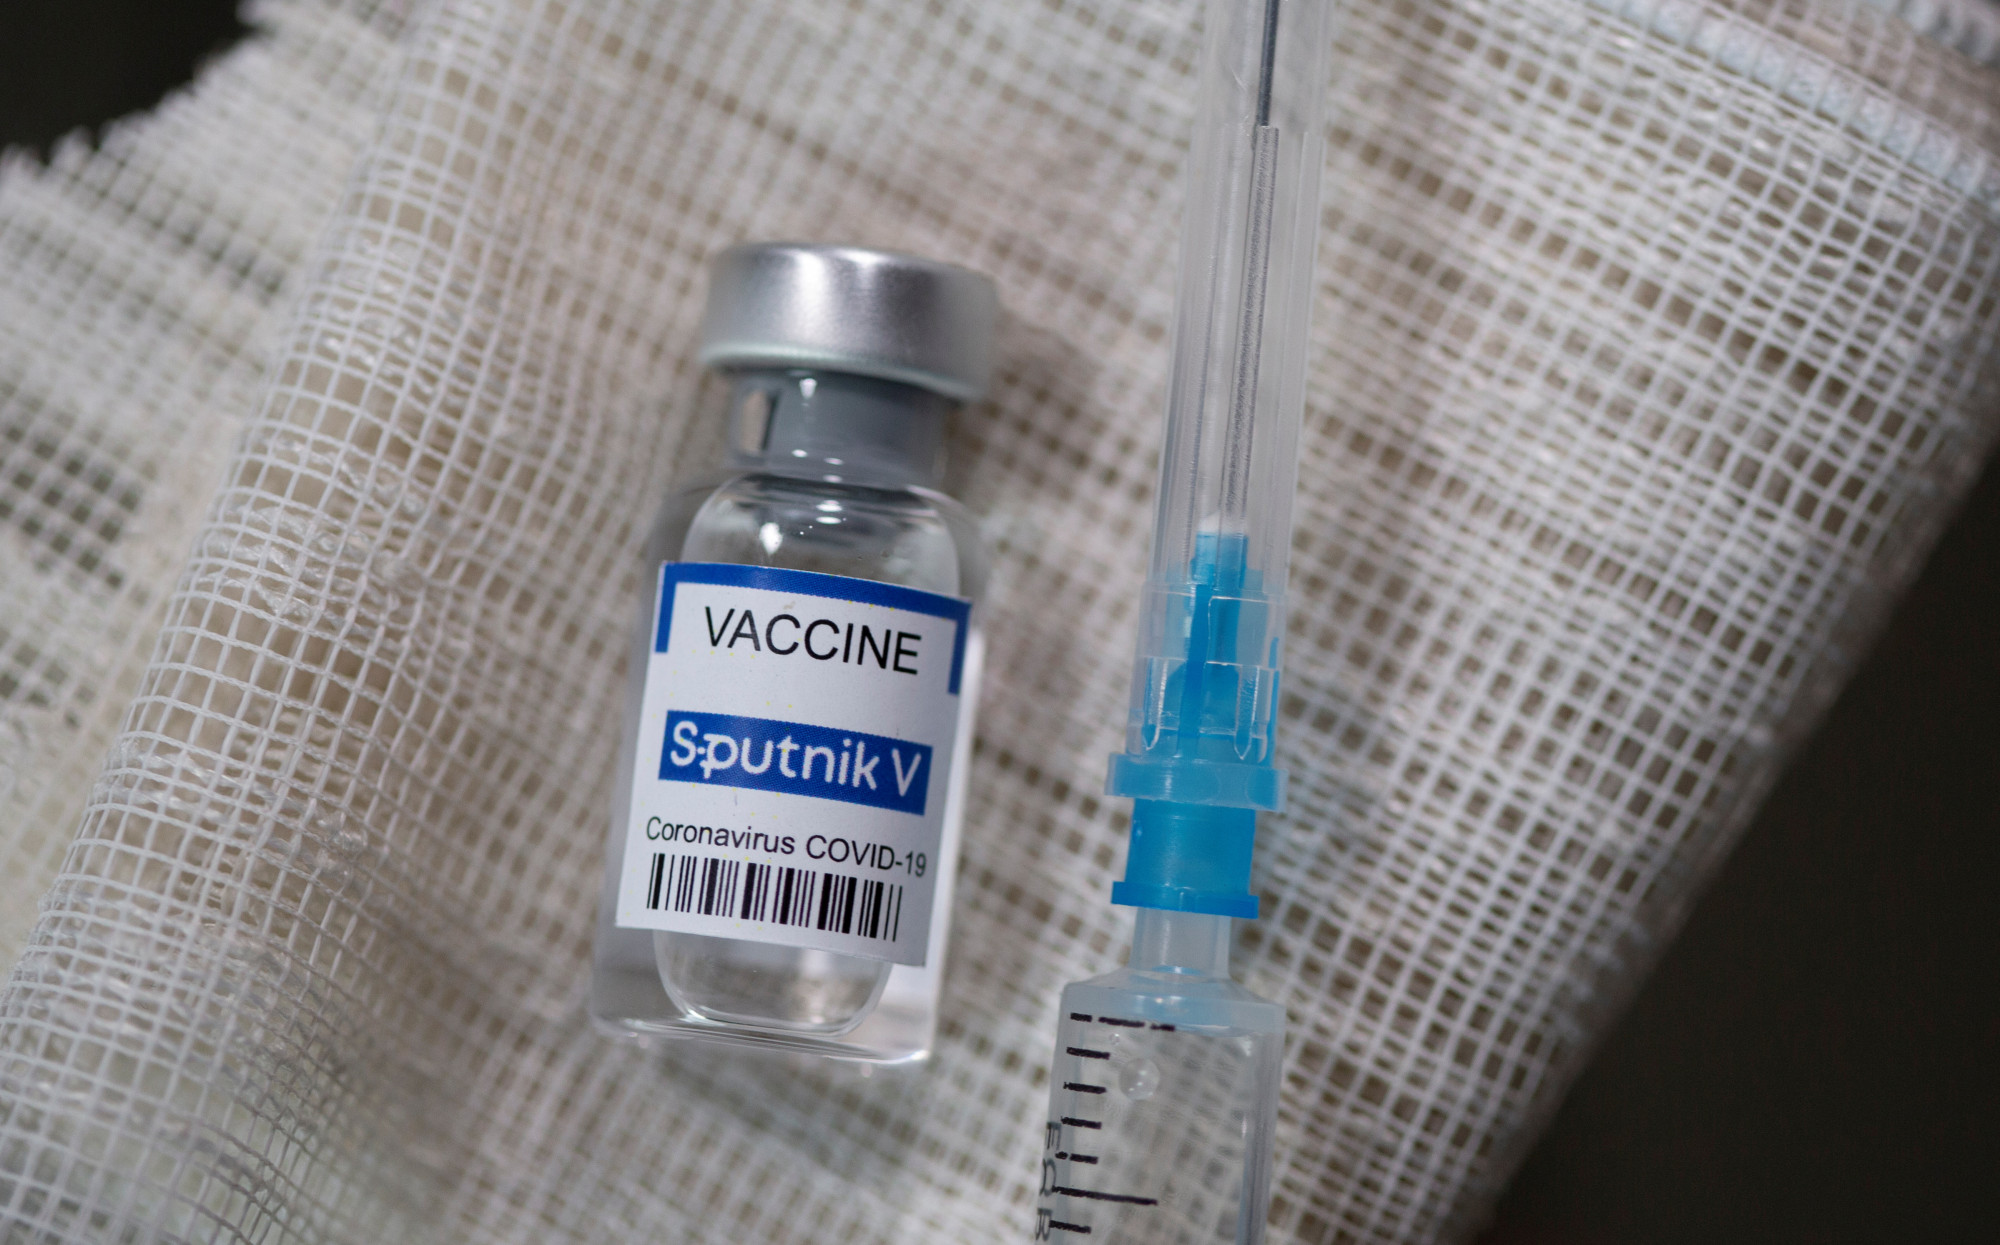 Việt Nam đã gia công 30.000 liều vắc xin Sputnik-V đầu tiên, đang chờ phía Nga kiểm định chất lượng